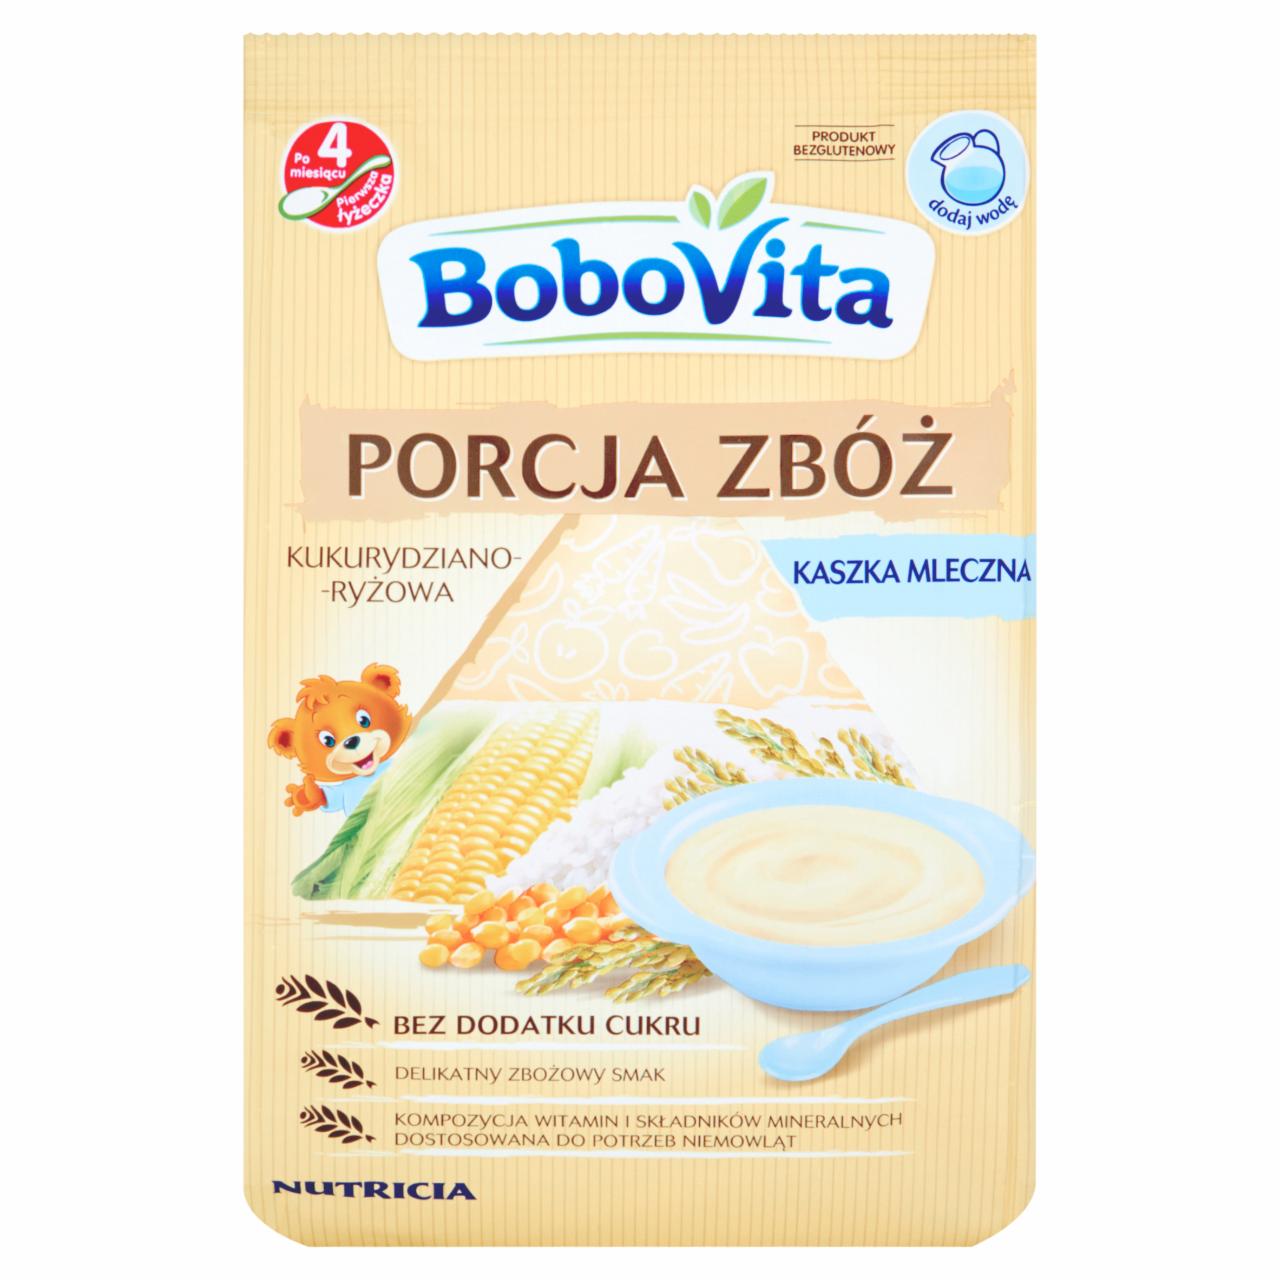 Zdjęcia - BoboVita Porcja zbóż Kaszka mleczna kukurydziano-ryżowa po 4 miesiącu 210 g